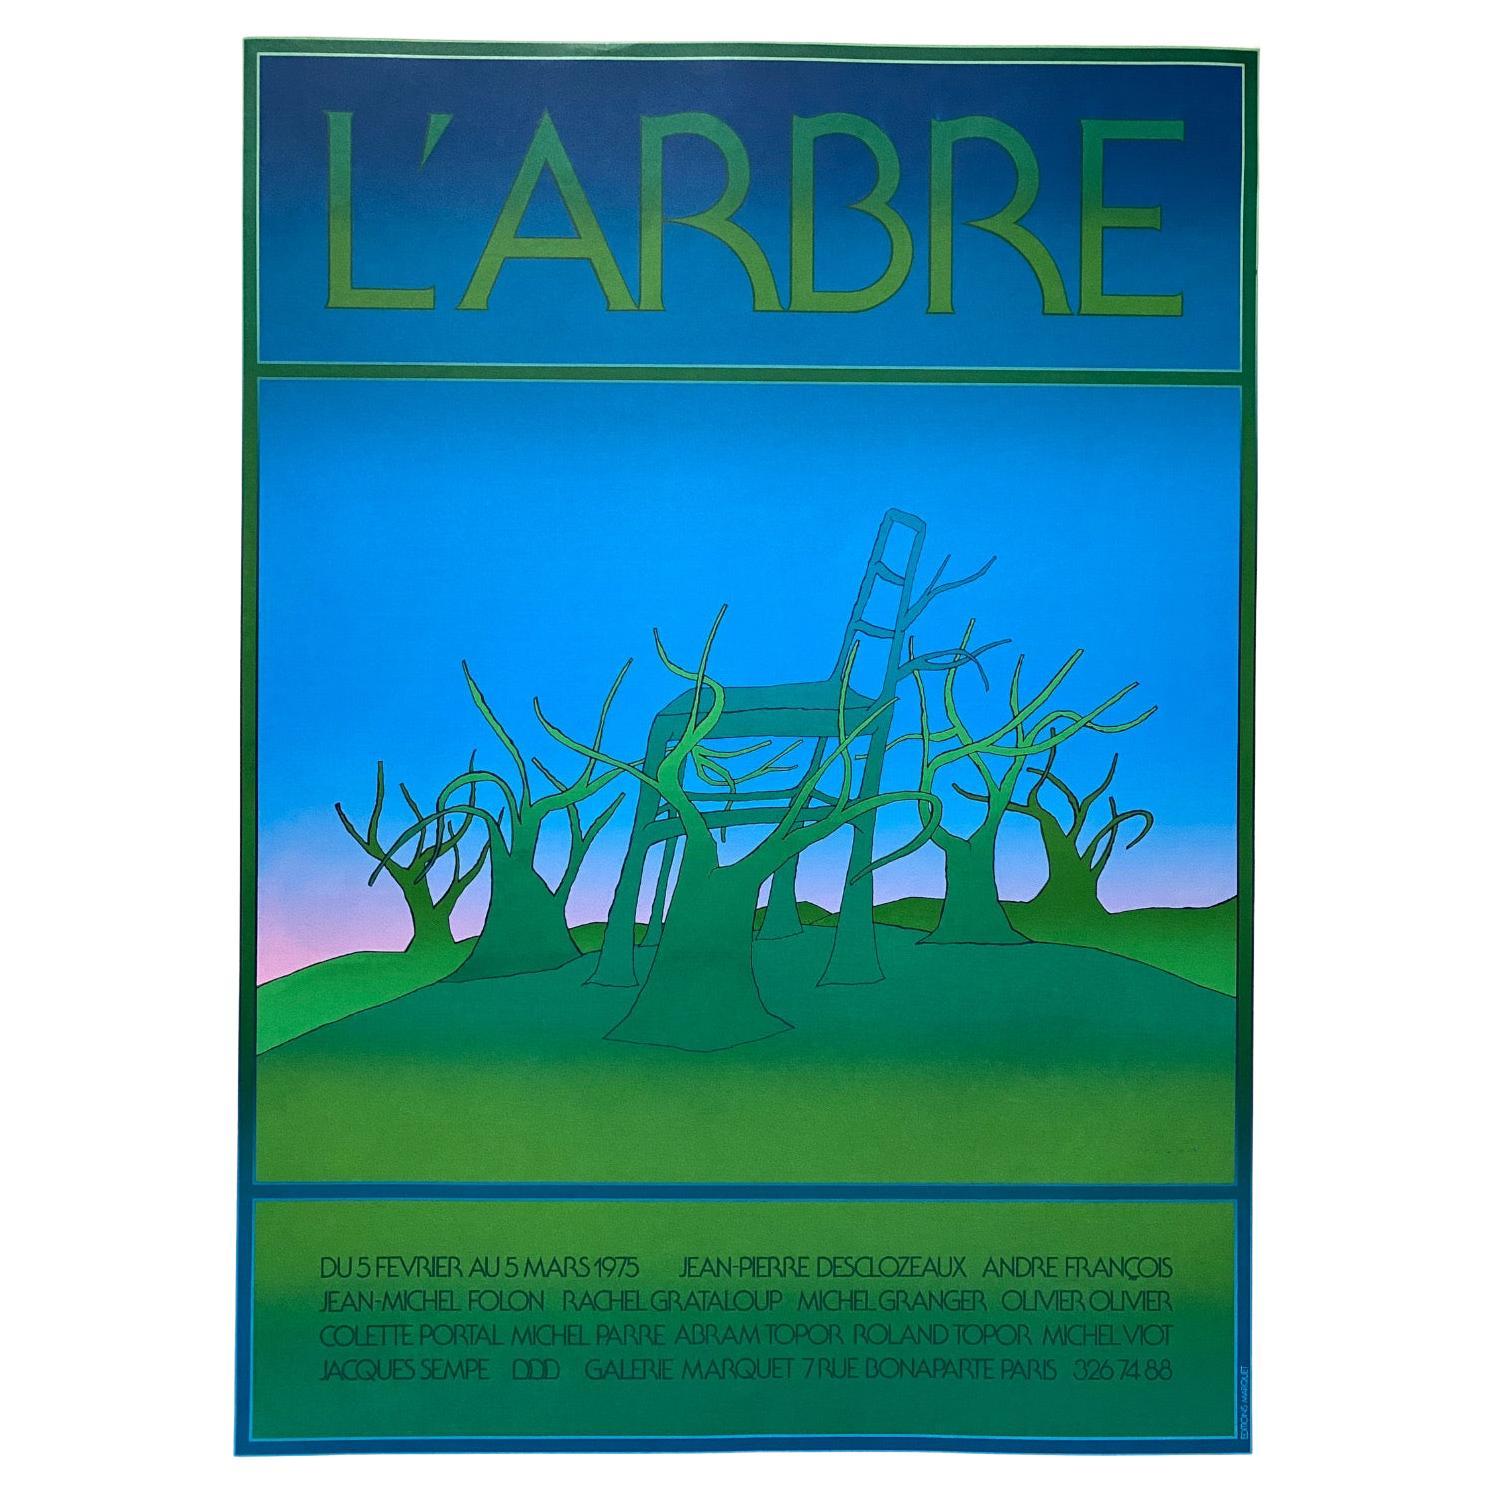 Sérigraphie « L' Arbre » de Jean Michel Folon pour la Gallerie Marquet, Paris - 1975